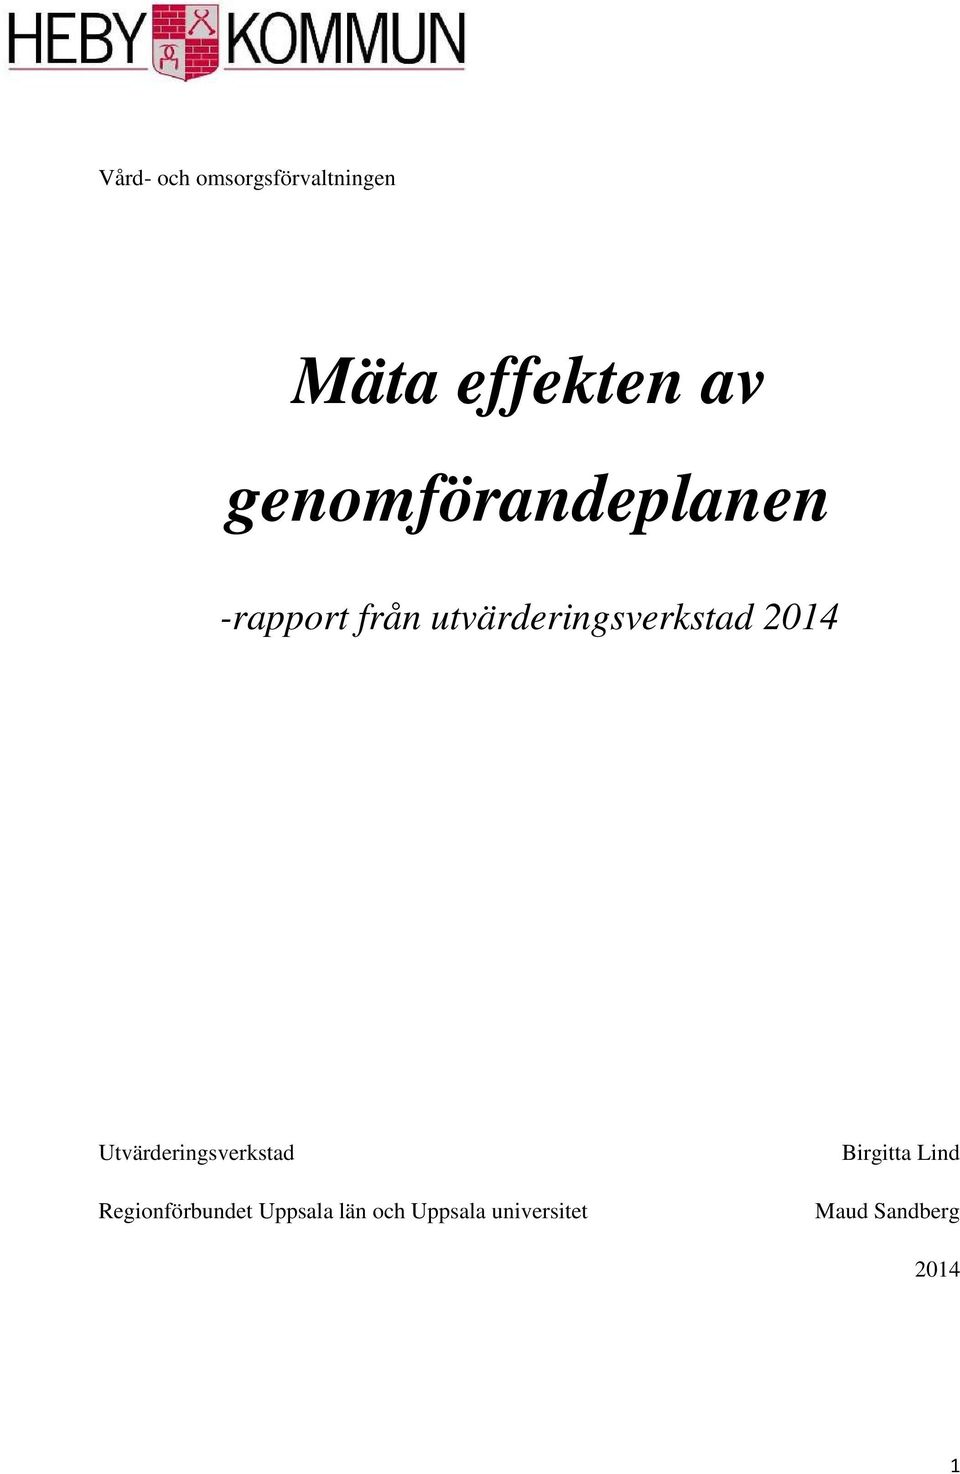 2014 Utvärderingsverkstad Regionförbundet Uppsala län